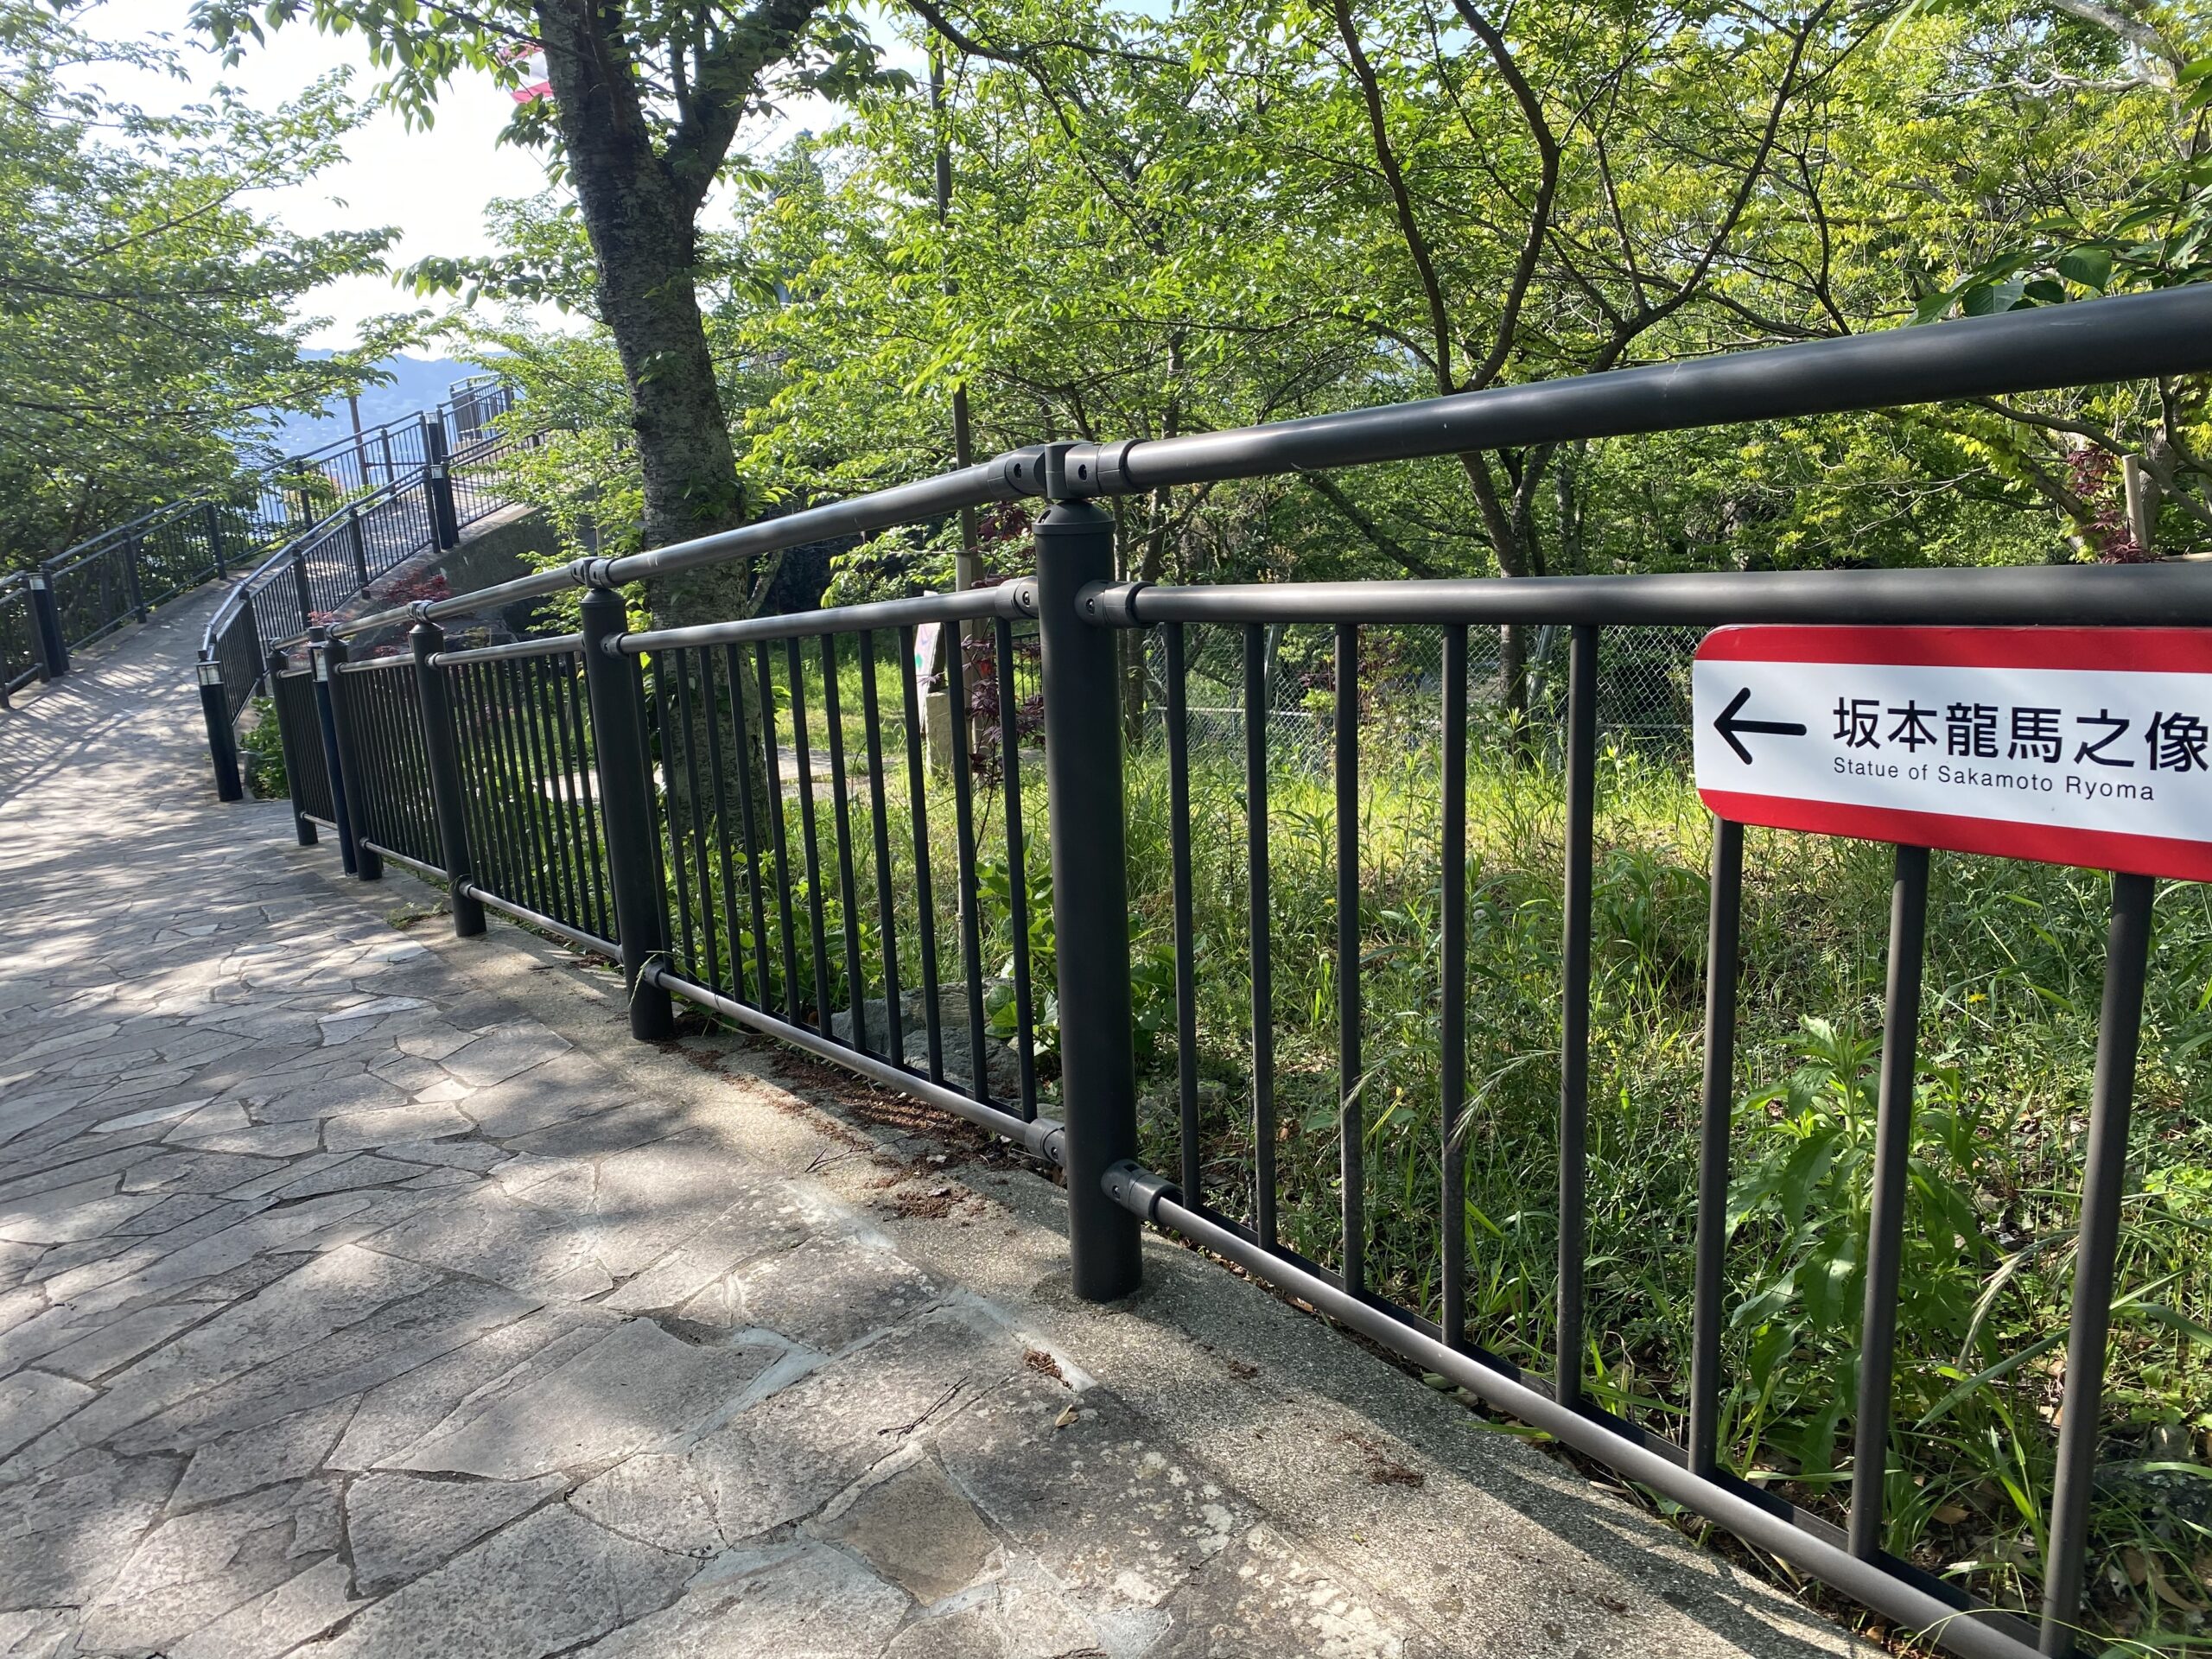 風頭公園の坂本龍馬像へのアクセス